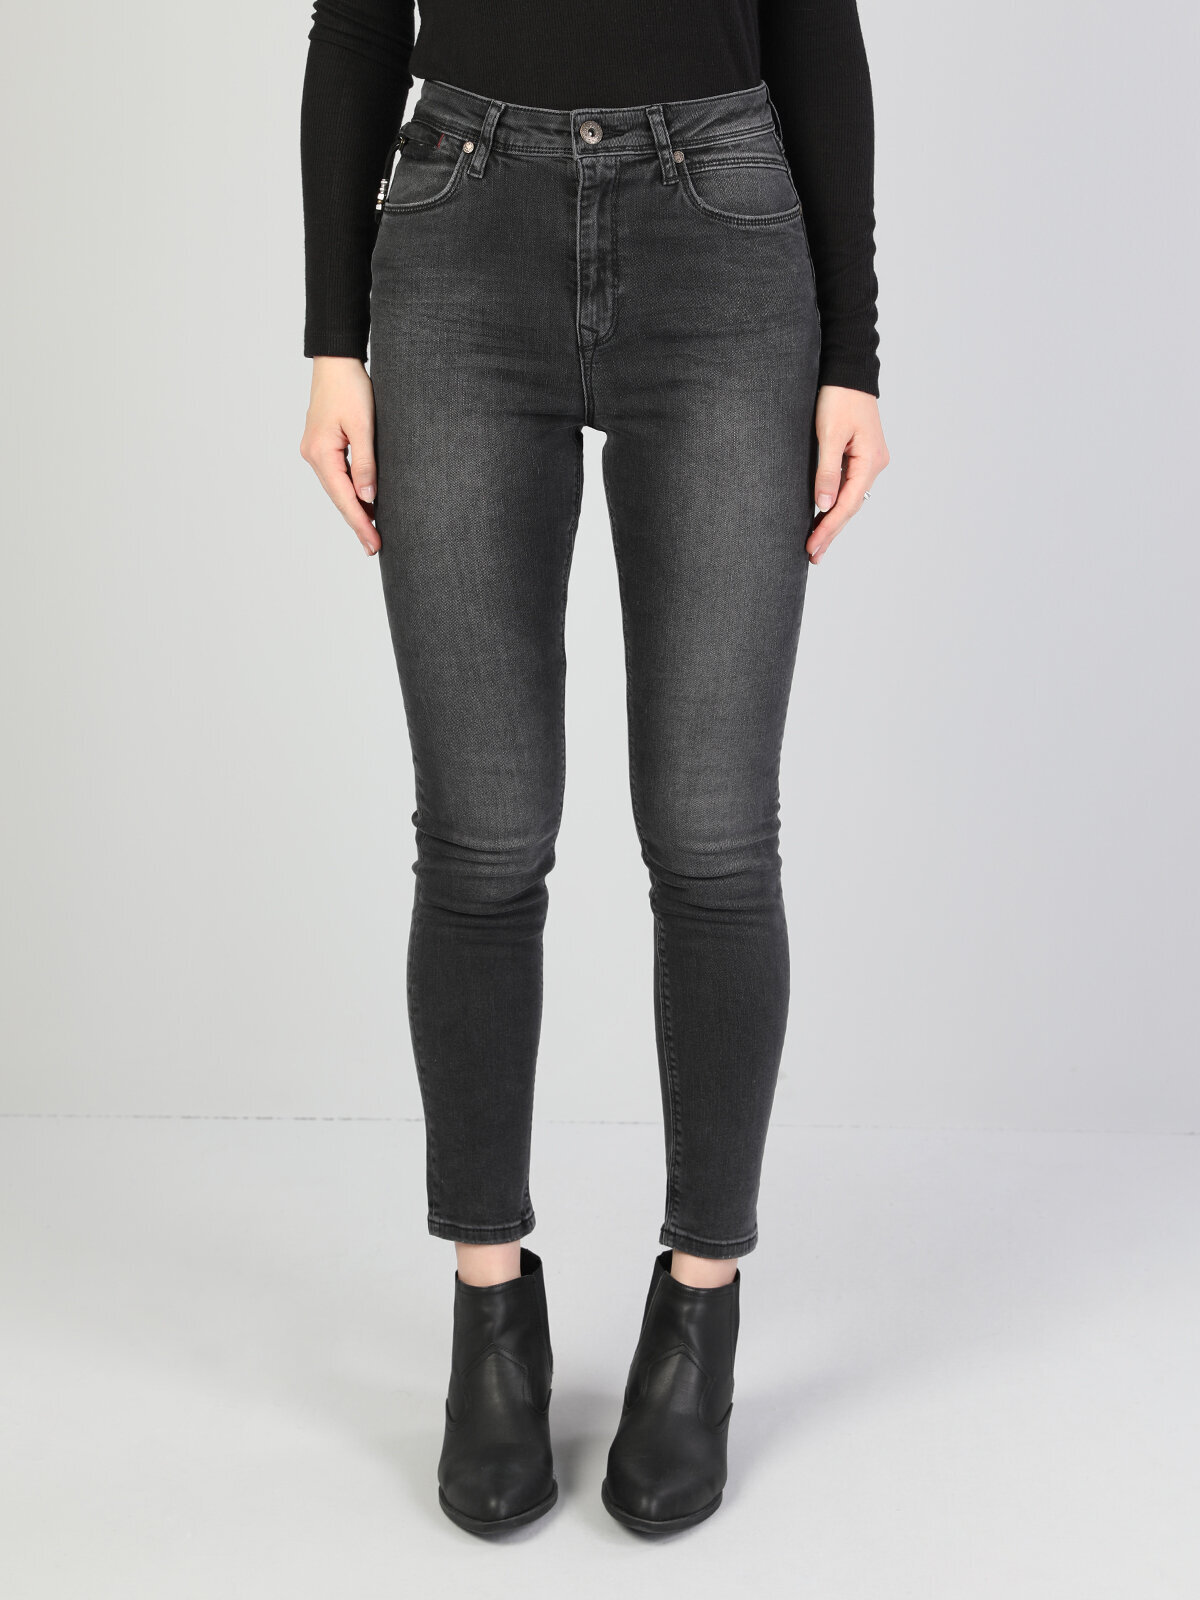 Colins 760 Dıana Yüksek Bel Dar Paça Super Slim Fit Koyu Gri Kadın Jean Pantolon. 3